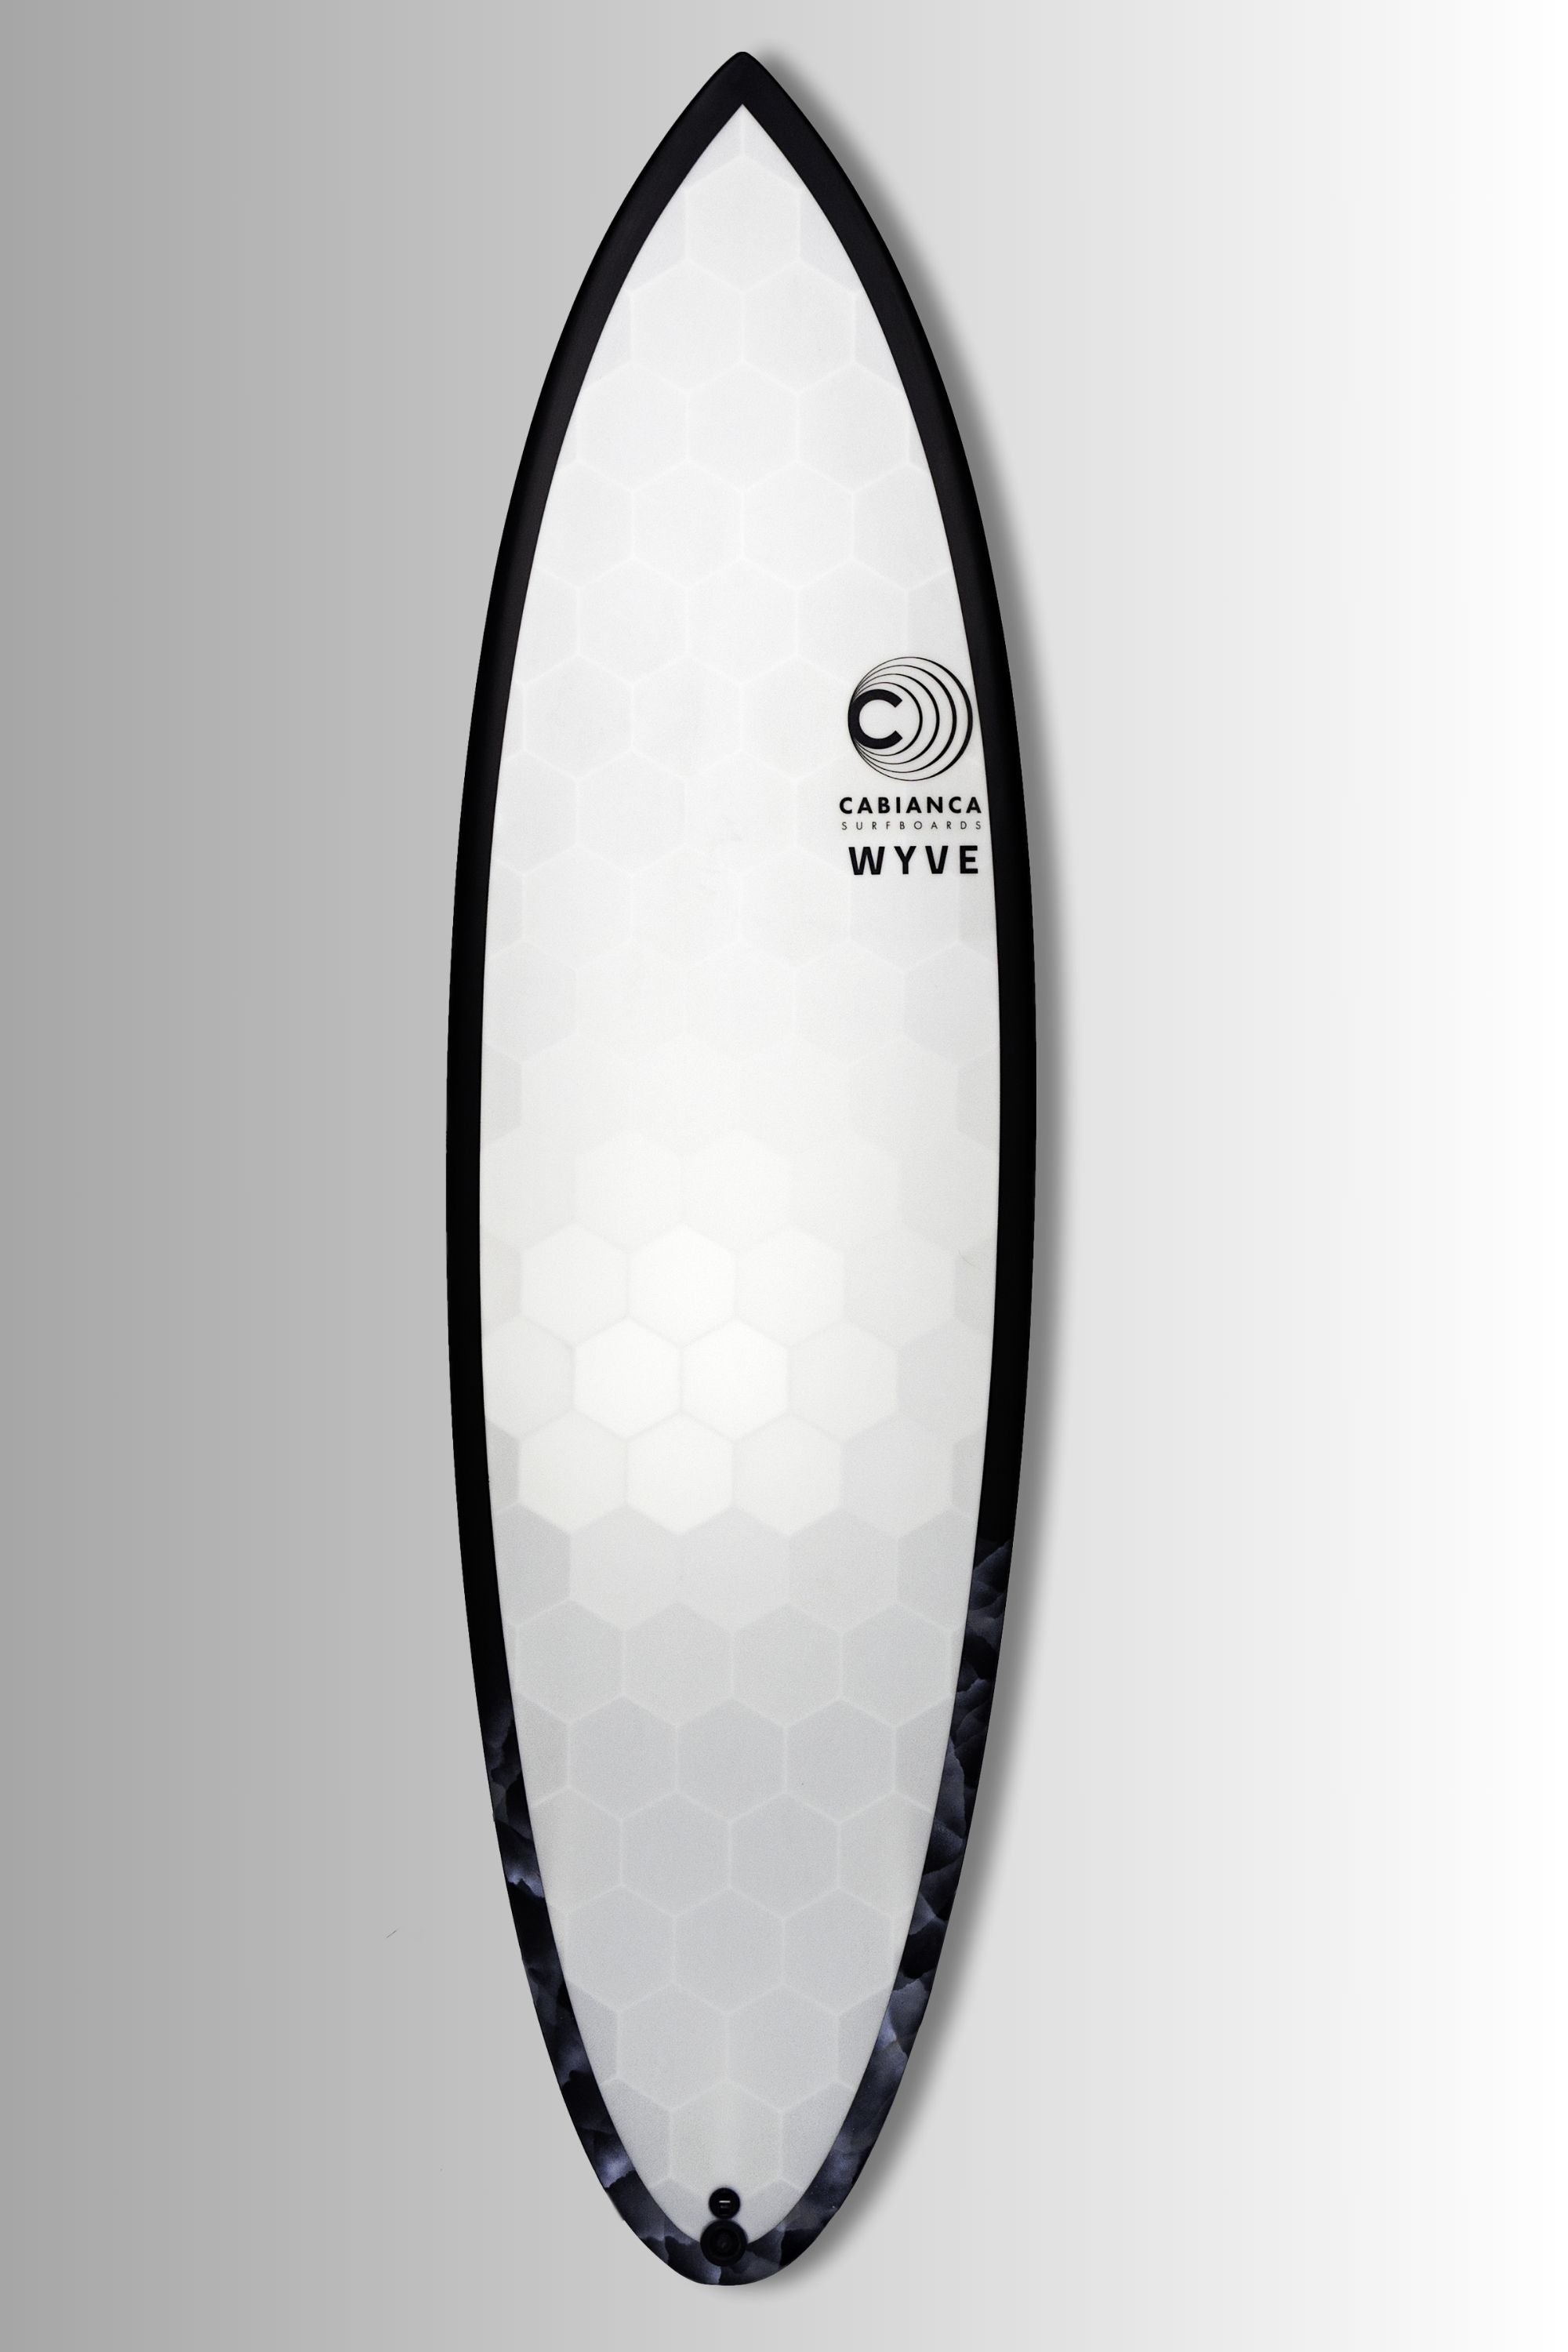 Planche de surf wyve made in france construite en matériaux récylé